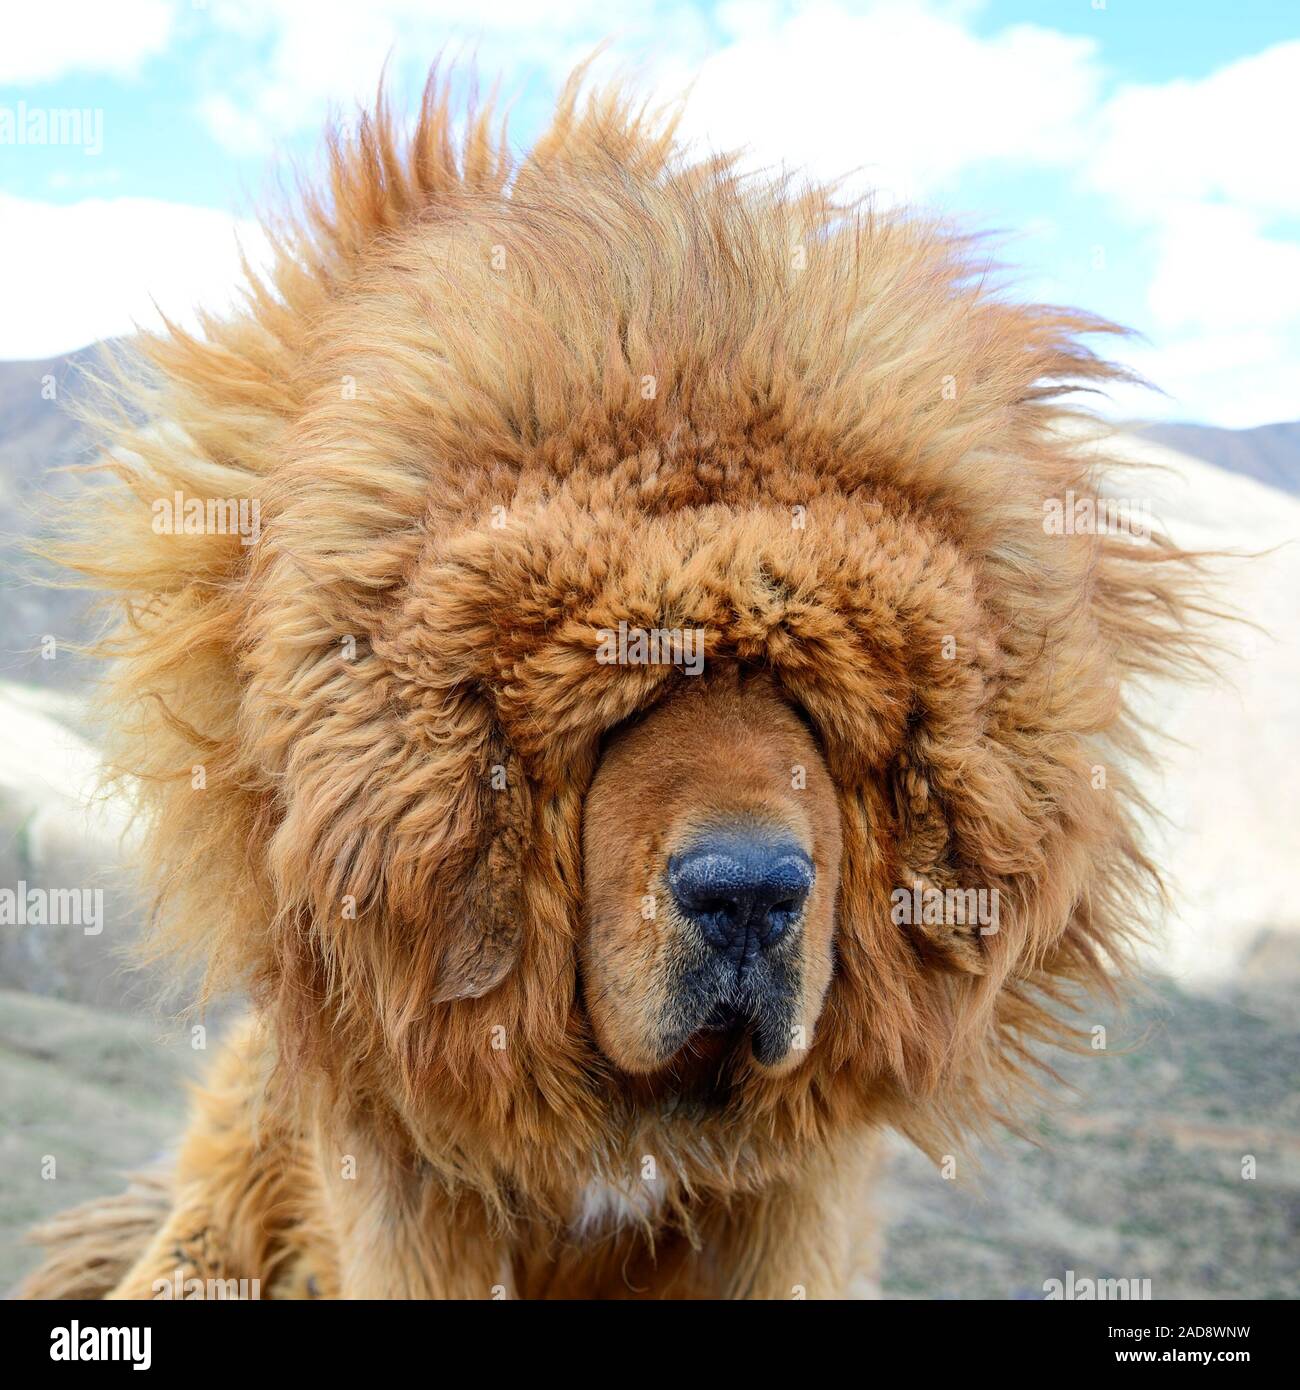 Il leone-come la criniera di un Mastino tibetano soffia selvaggiamente nel ventoso clima della regione autonoma del Tibet in Cina. Foto Stock